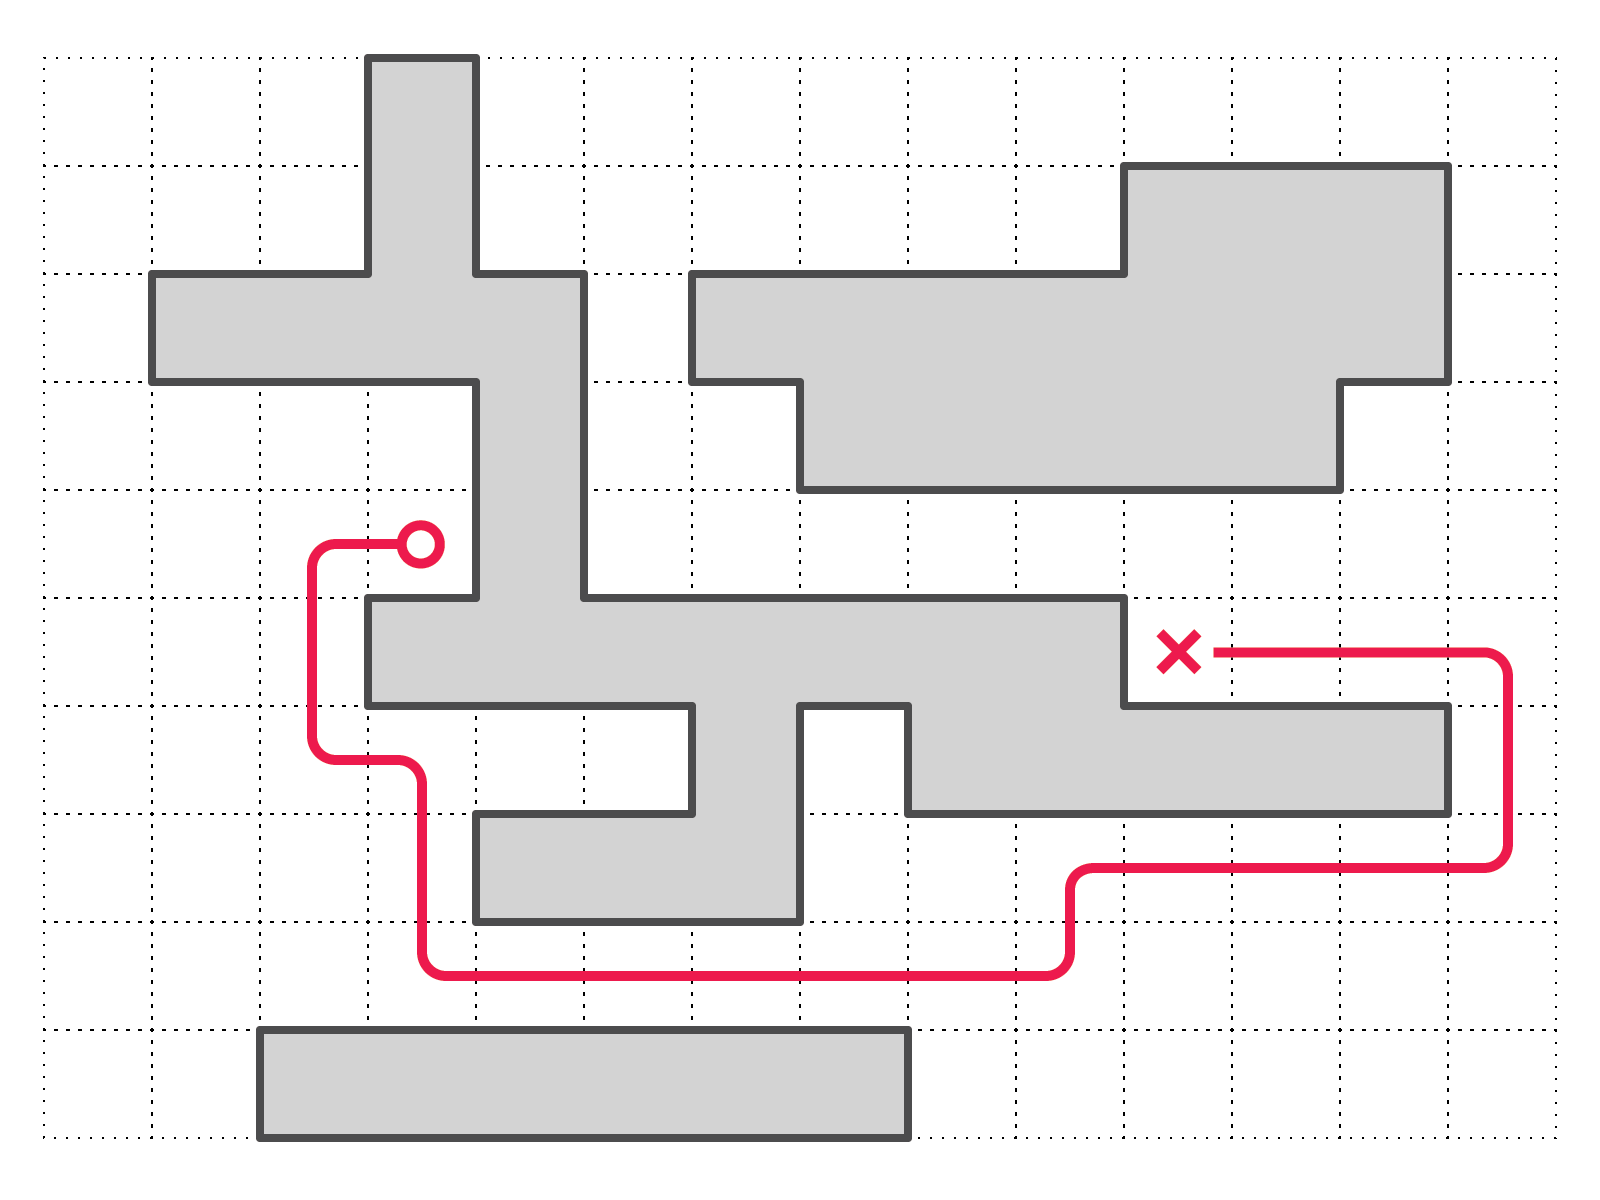 图4：寻路算法显示了一条从原点到目的地的有效路径，可以避开障碍物。